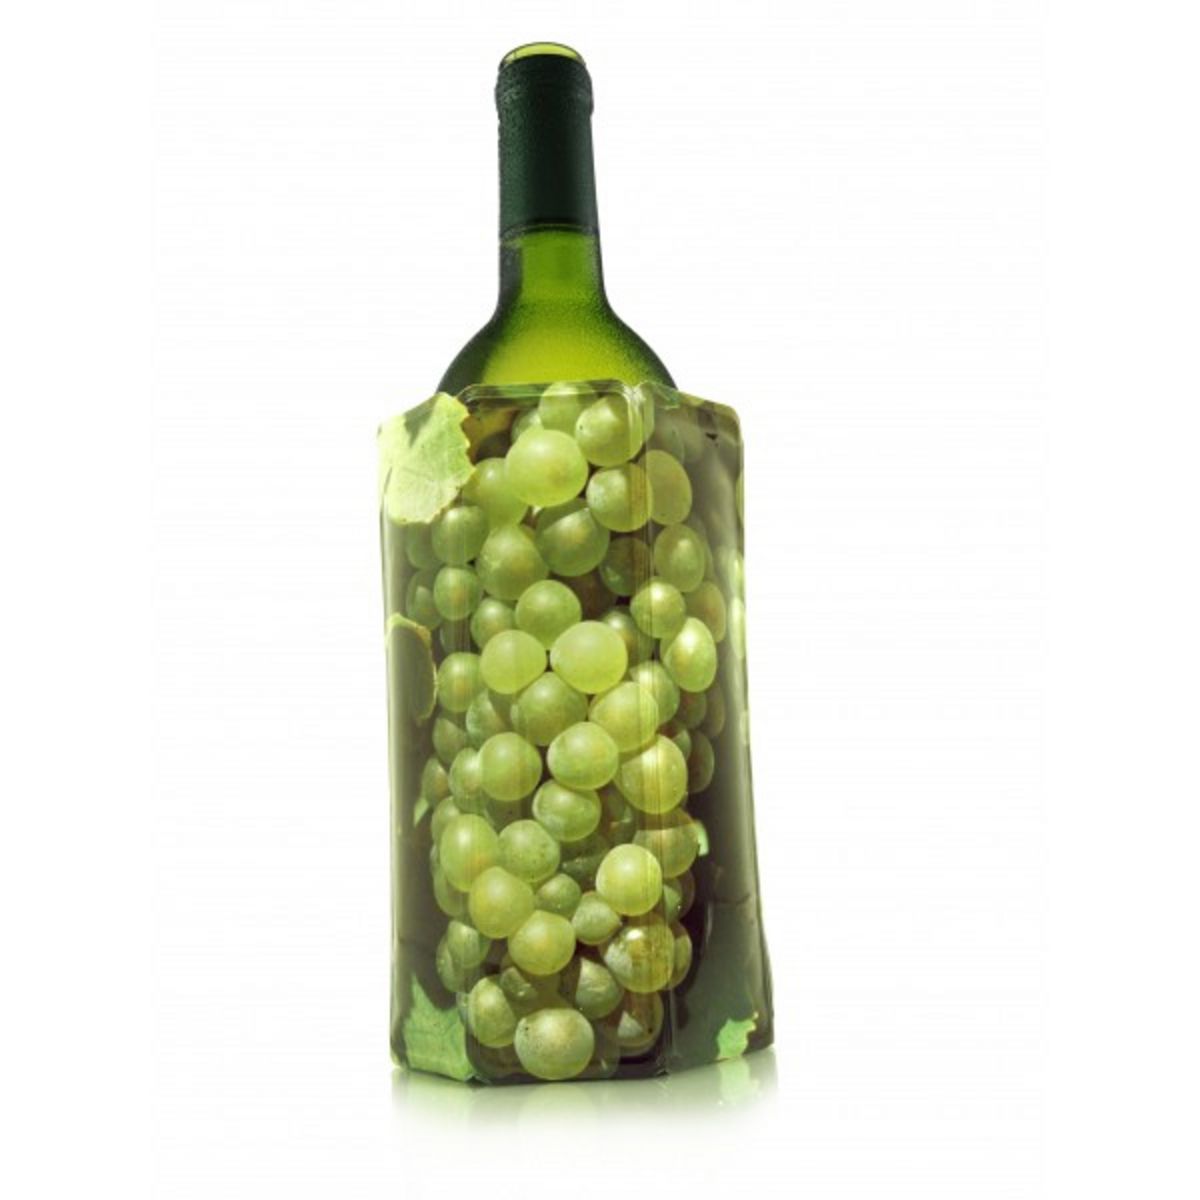 Vacu vin Rafraichisseur de bouteille decor vin blanc - 38814